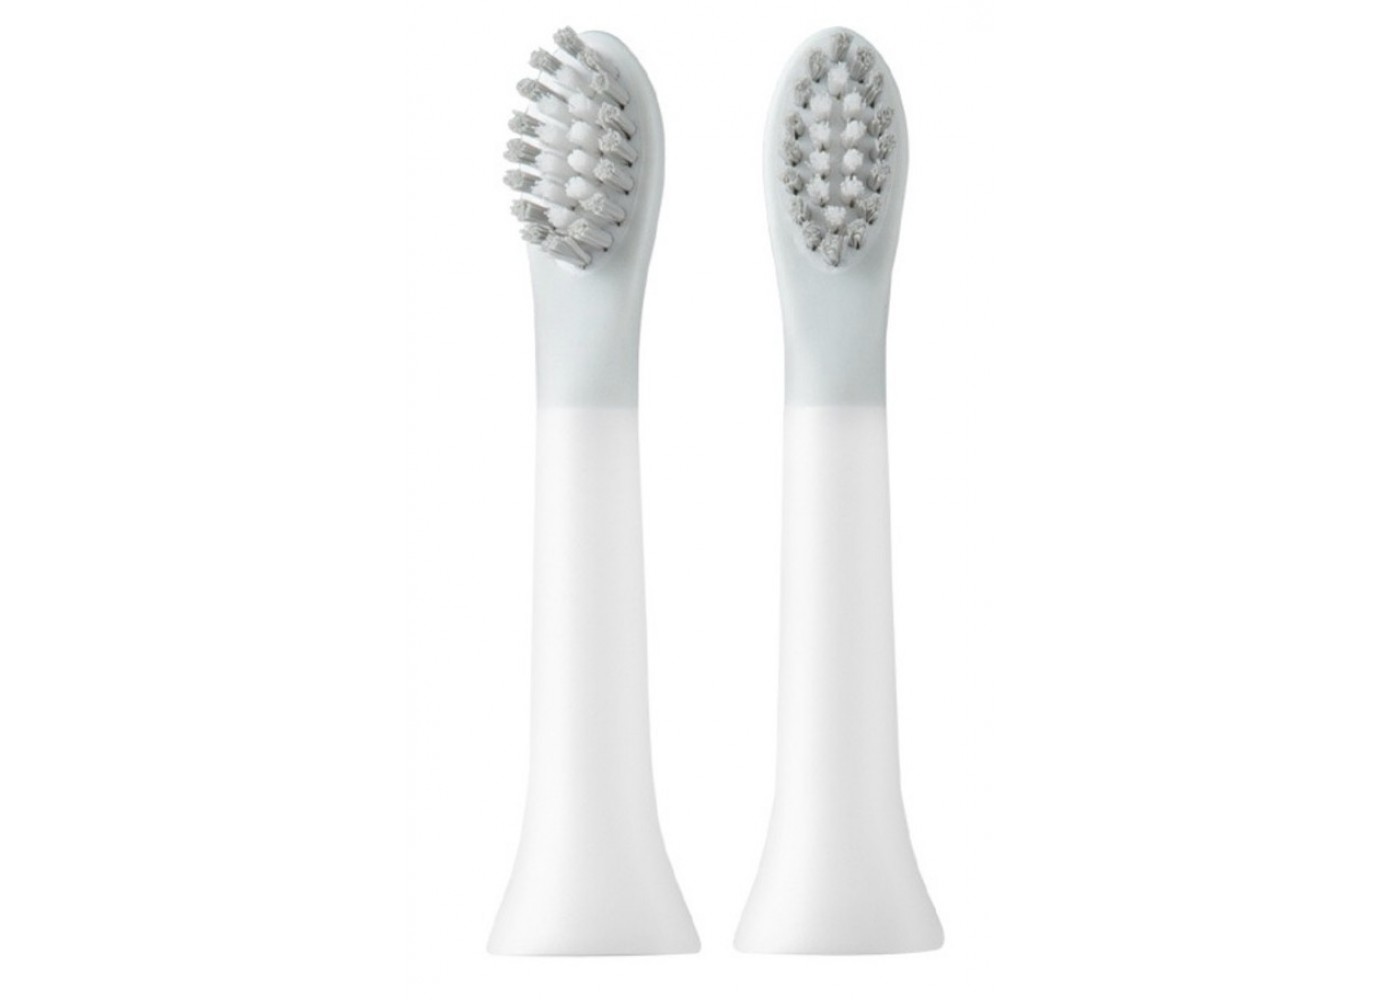 Сменные насадки для зубной щётки Xiaomi So White Sonic Electric Toothbrush (2 шт)